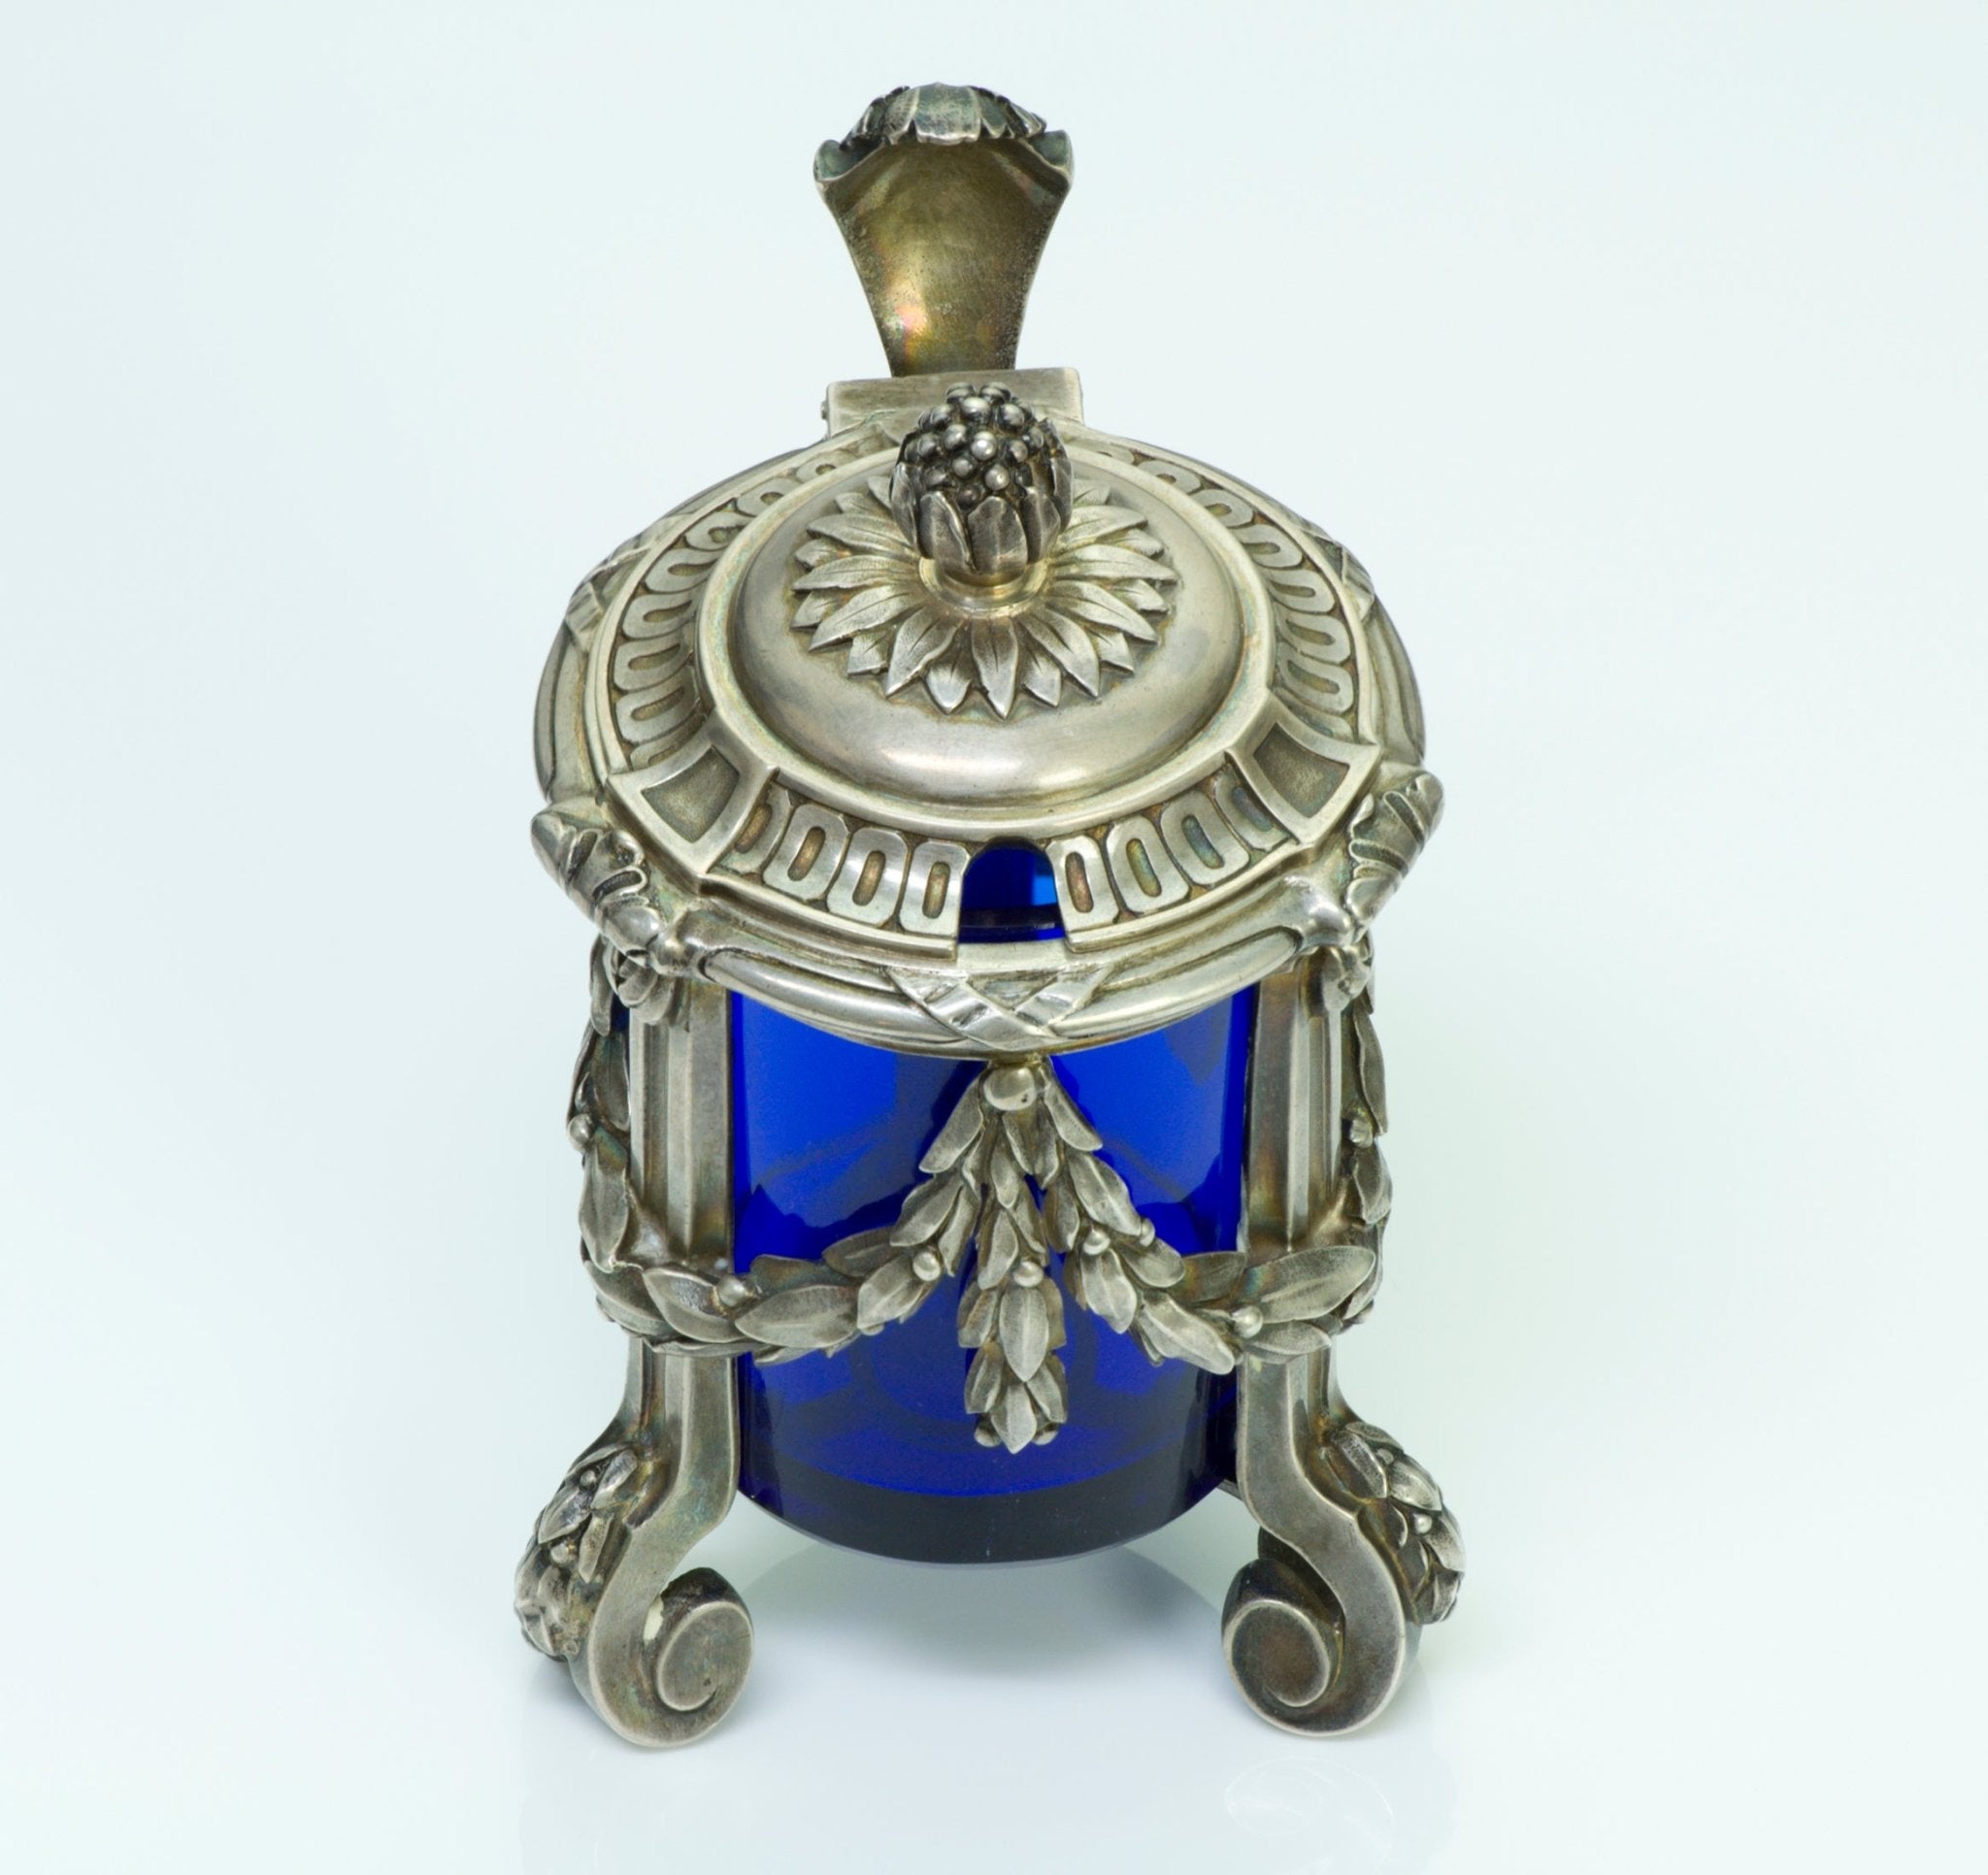 Antique Boin Taburet Paris Silver Condiment Pot - DSF Antique Jewelry